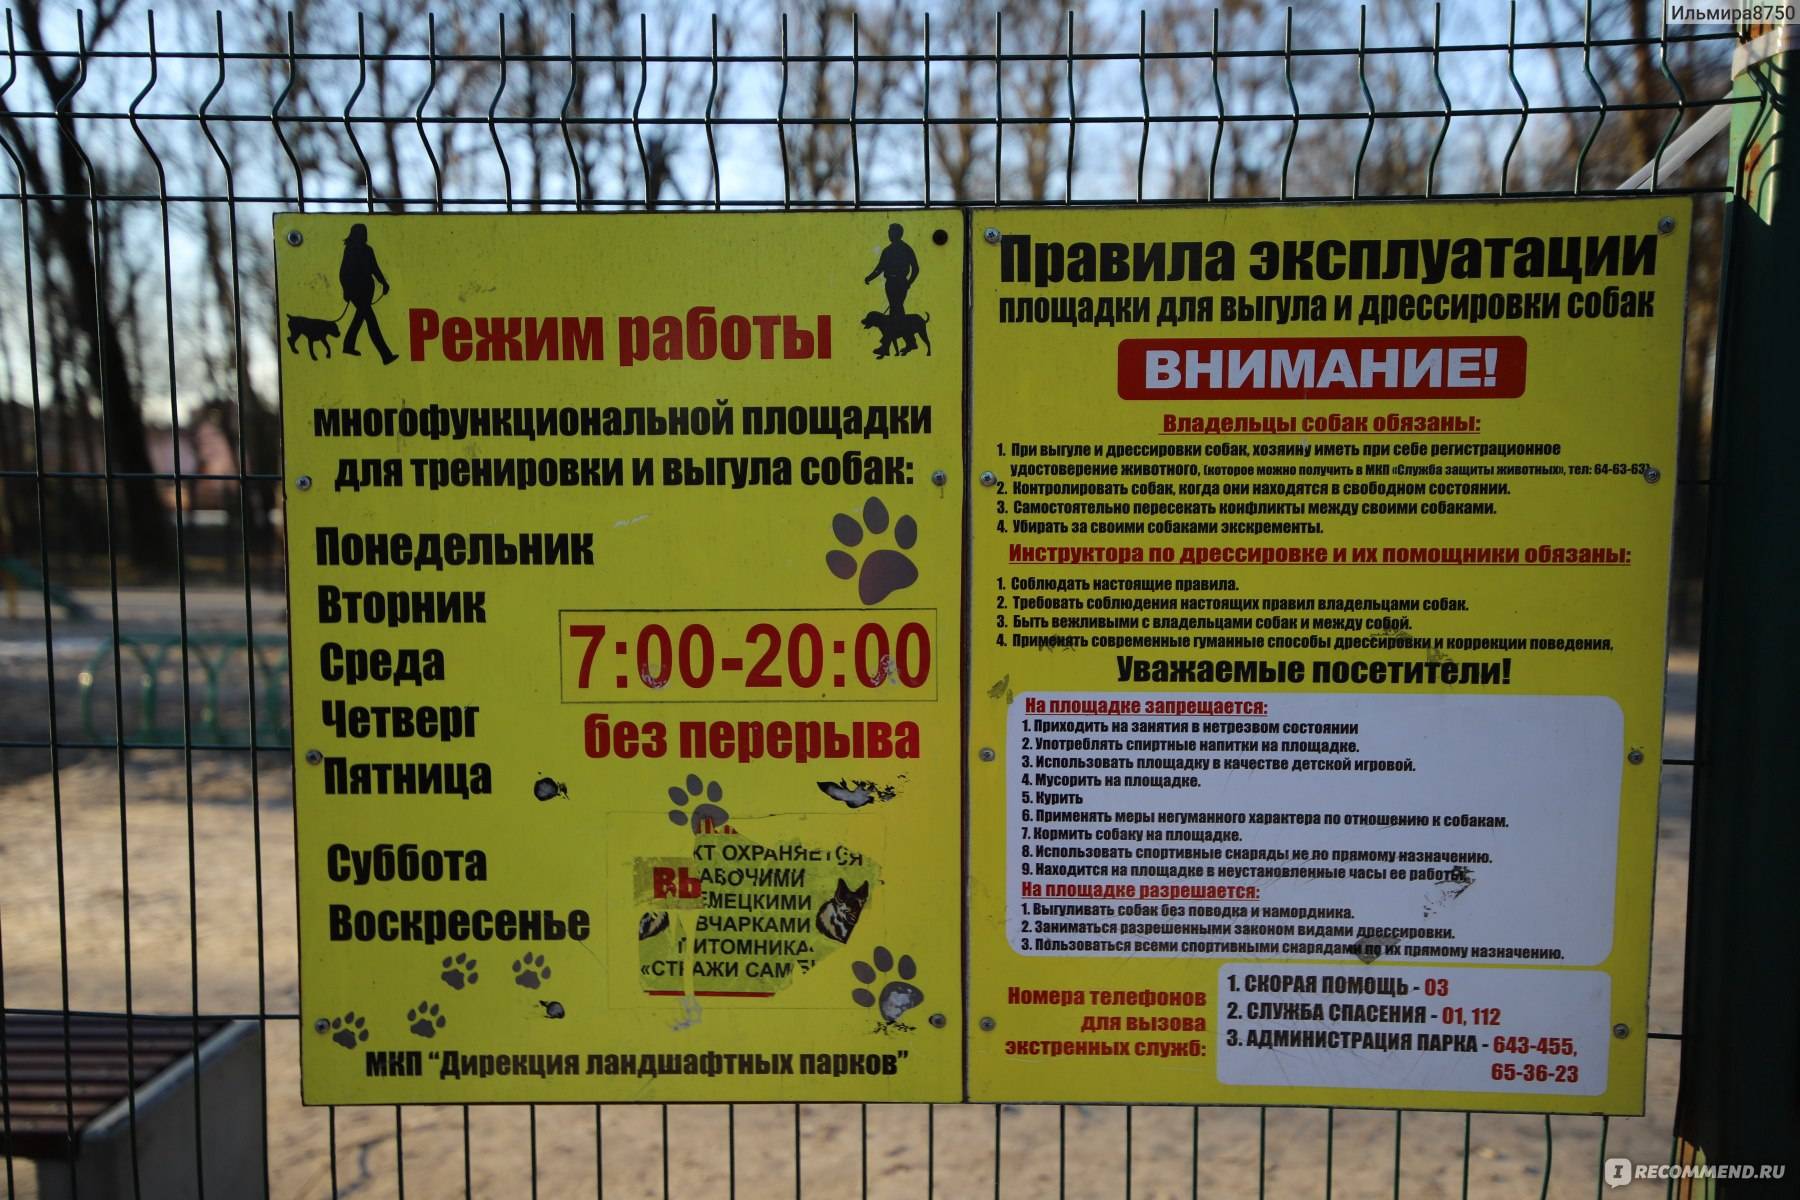 Закон о выгуле собак в 2021 году: правила в россии, штрафы в неположенных местах